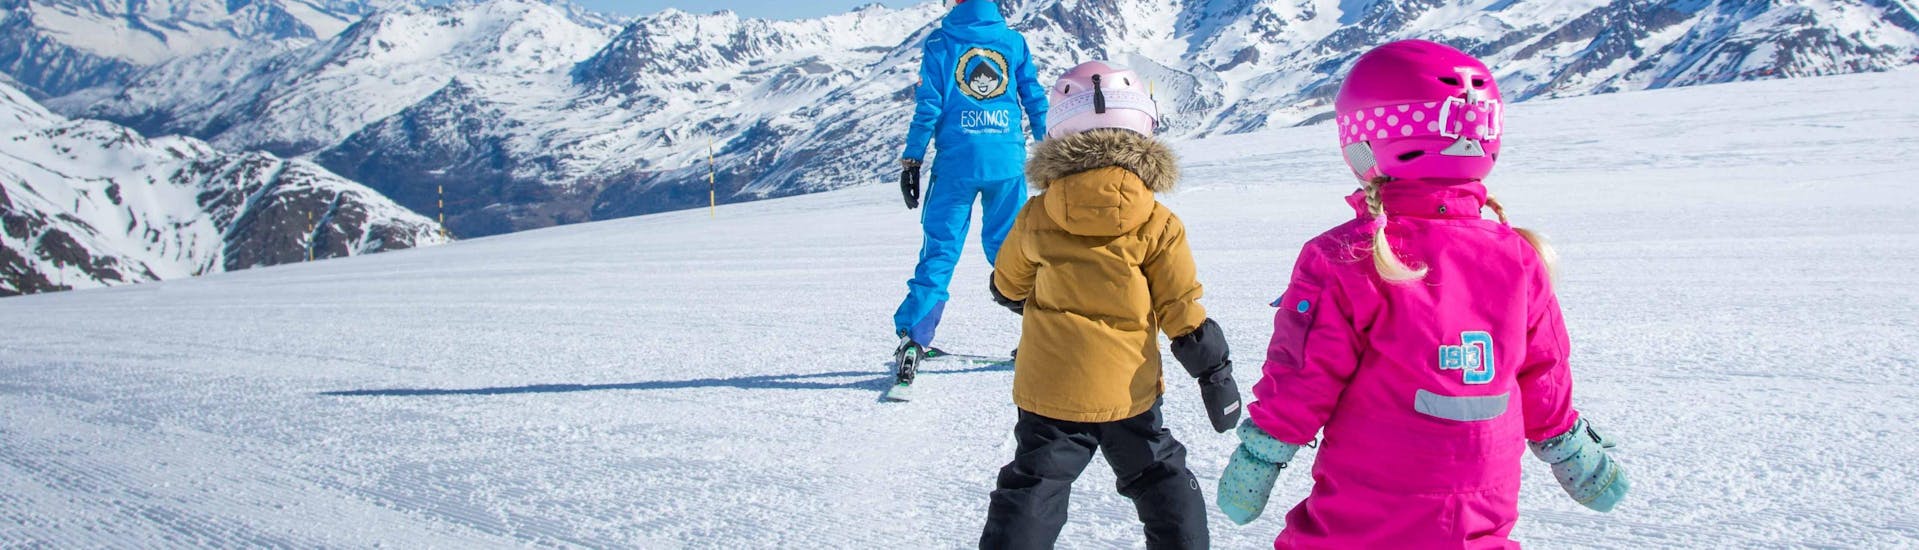 Cours particulier de ski Enfants dès 8 ans pour Tous niveaux.